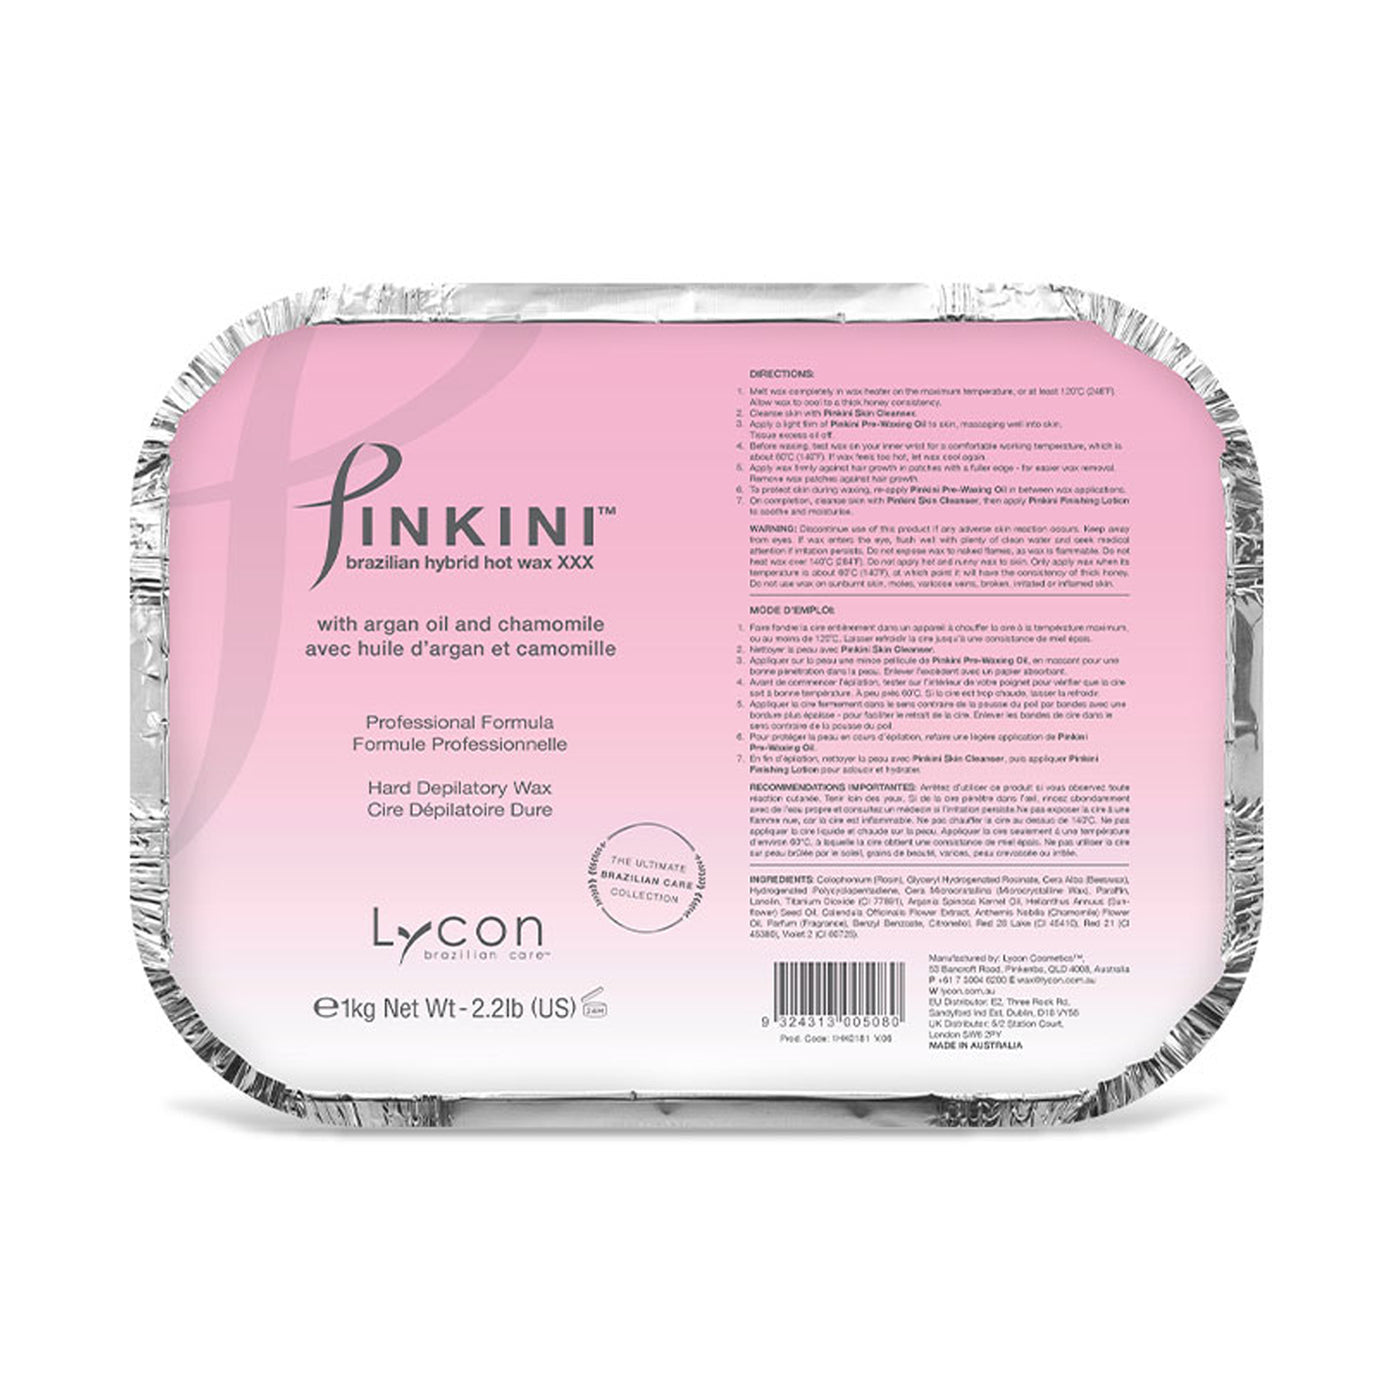 Lycon Pinkini Brazilian Hybrid Hot Wax 1kg